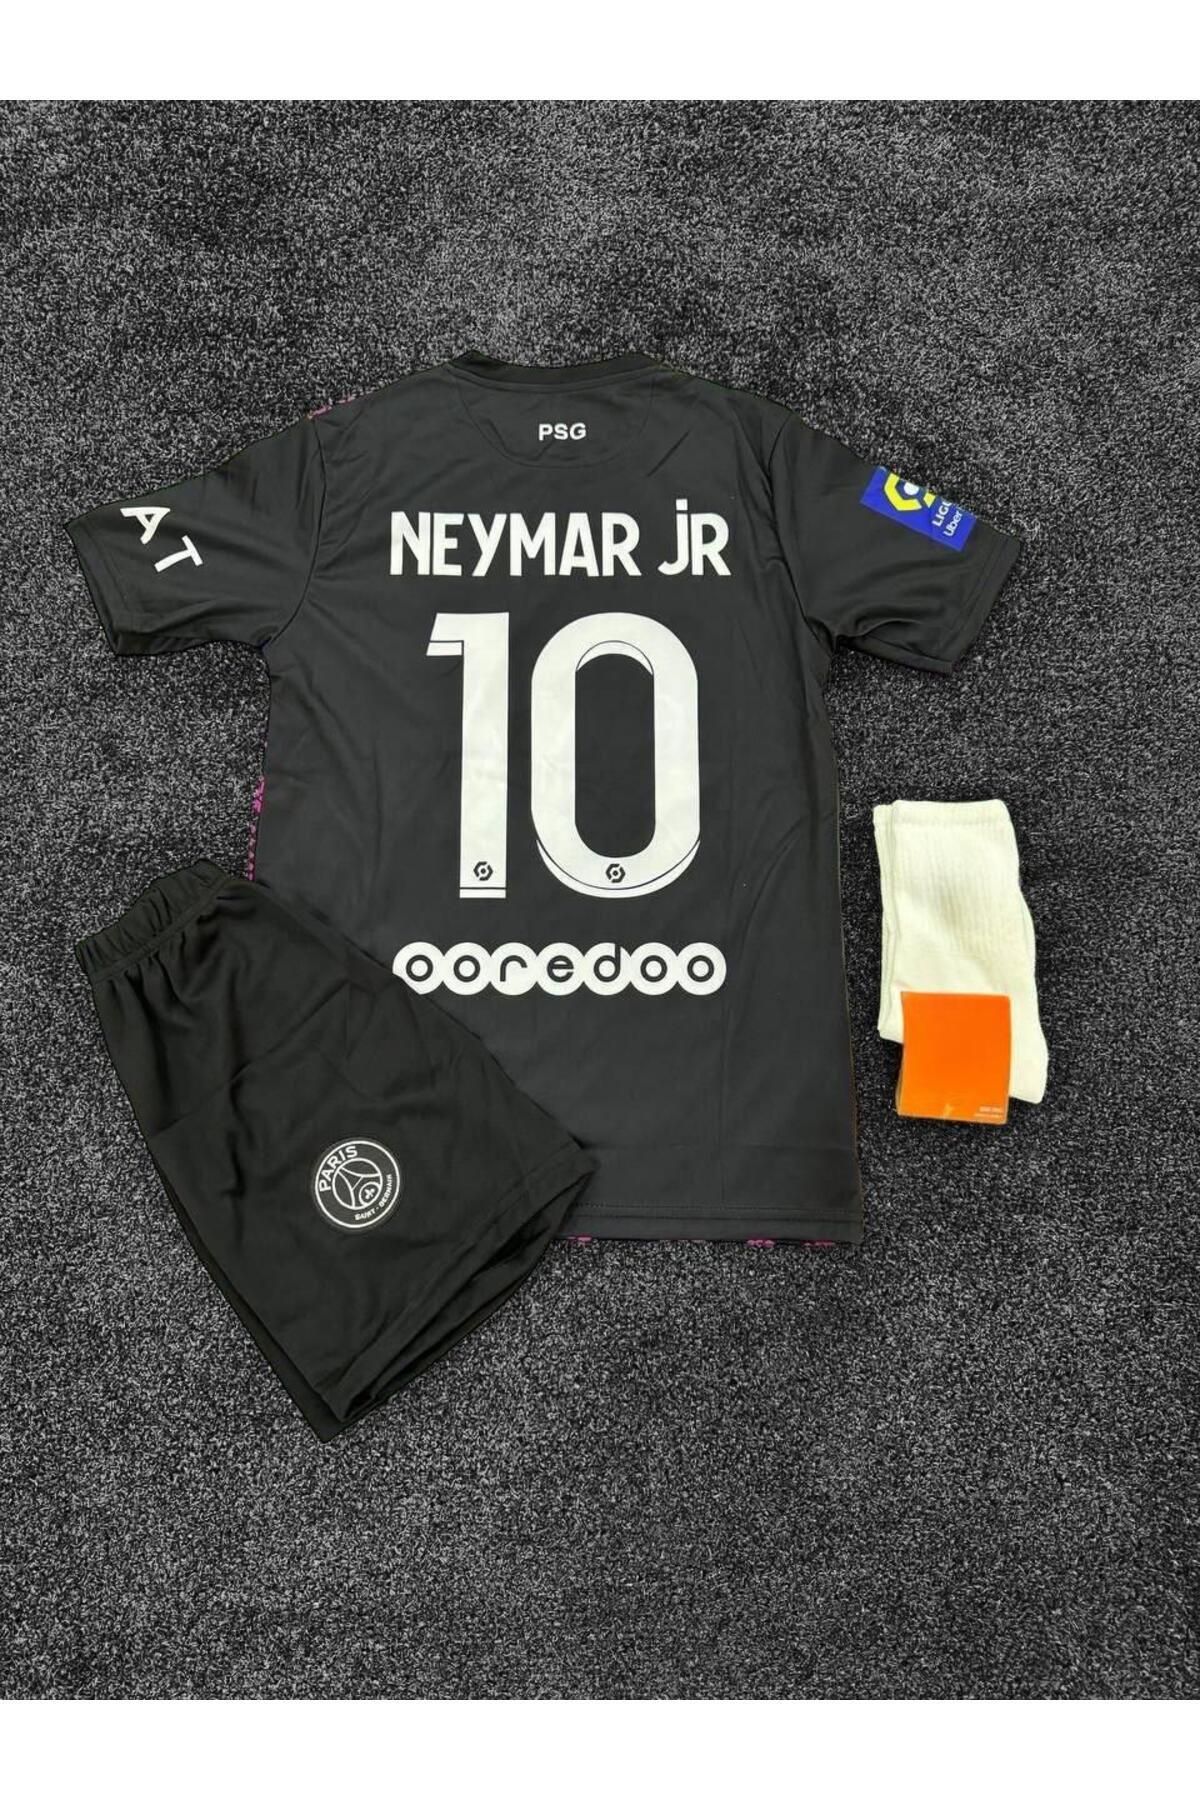 Alaturka Mix Neymar Jr Psg Yeni Sezon Futbol Forması 23/24 Paris Saint Germain